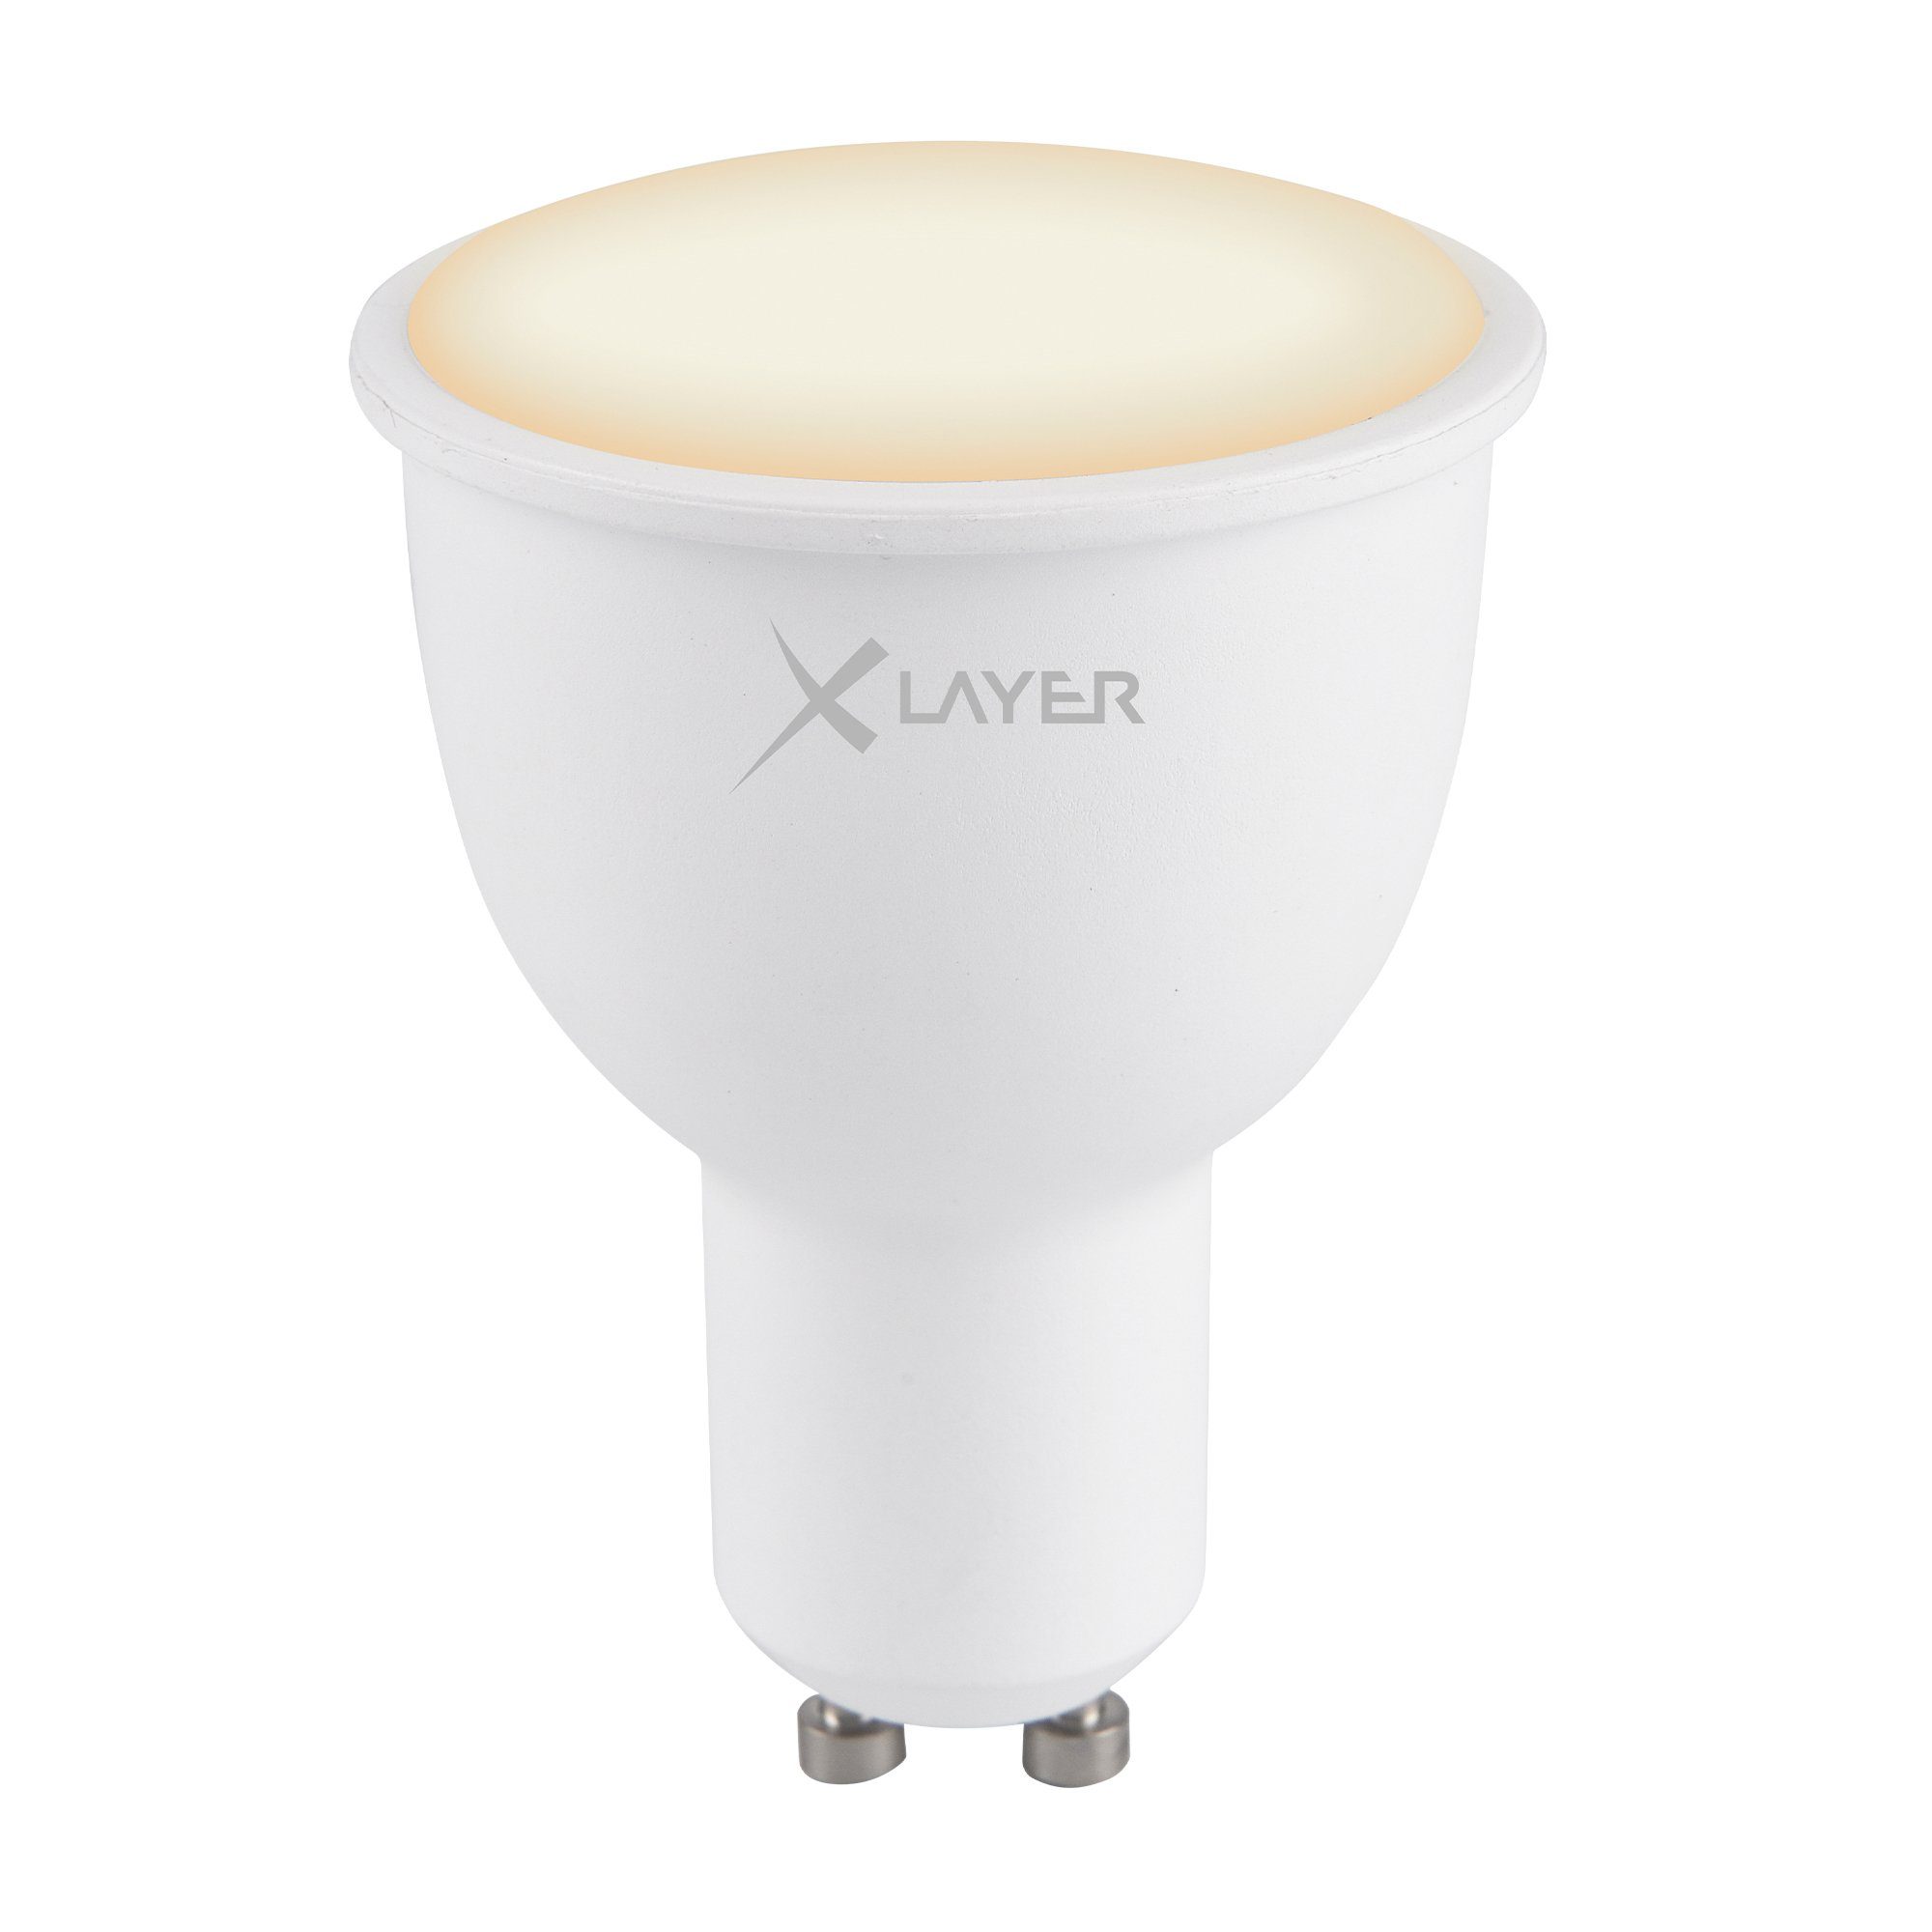 LED Smarte und LED-Leuchte 4.5W Echo WLAN XLAYER Dimmbar Smart GU10 Kaltweiß Warm- Lampe